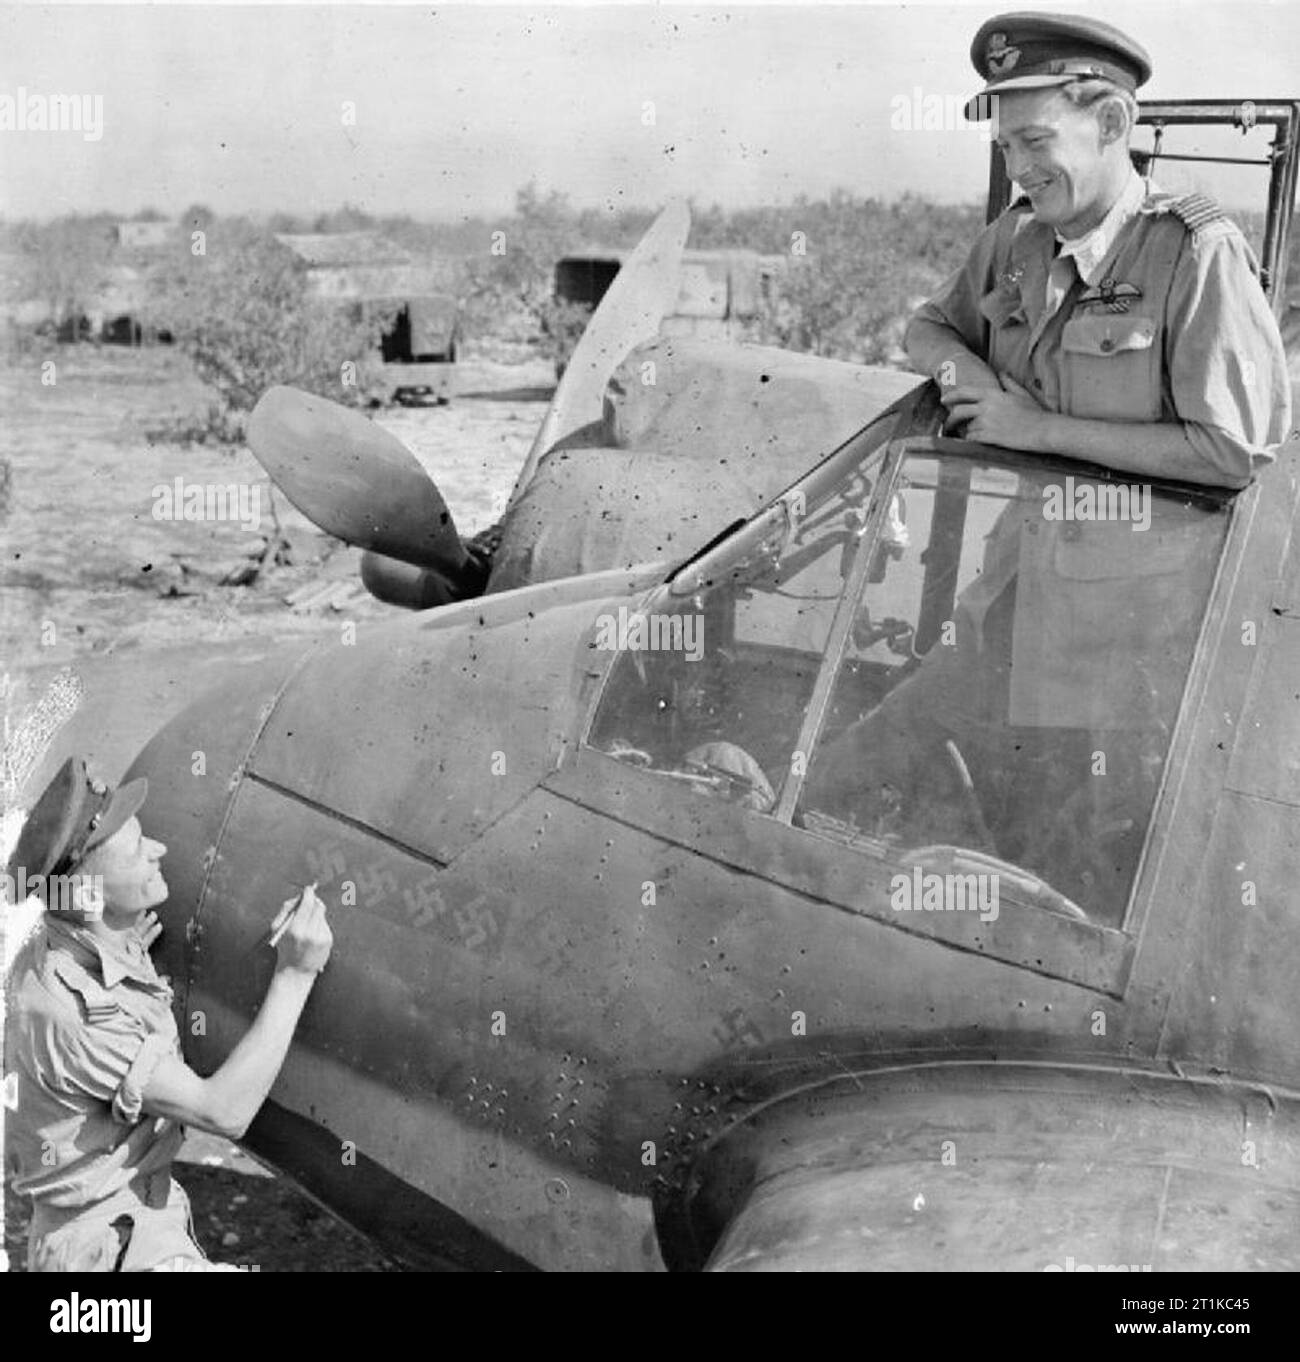 Royal Air Force - Italien, auf dem Balkan und in Südosteuropa, 1942-1945. Wing Commander C P 'paddy' Grün, Kommandierender Offizier der Nr. 600 Squadron RAF, Uhren aus dem Cockpit seiner Bristol Beaufighter Mark VIF bei Cassibile, Sizilien, als sein Radar operator, Flying Officer R J Gillies berührt die Hakenkreuze auf die Nase des Flugzeugs, Angabe der acht Siege, die sie behauptet hatte, während fliegen zusammen als "Night fighter Crew. Sieben dieser Siege wurden während drei aufeinanderfolgenden Nächten im Juli über Sizilien, vier von ihnen in einem einzigen Sortie erreicht. Grün hatte gerade die DSO für seine Fähigkeit ausgezeichnet. Stockfoto